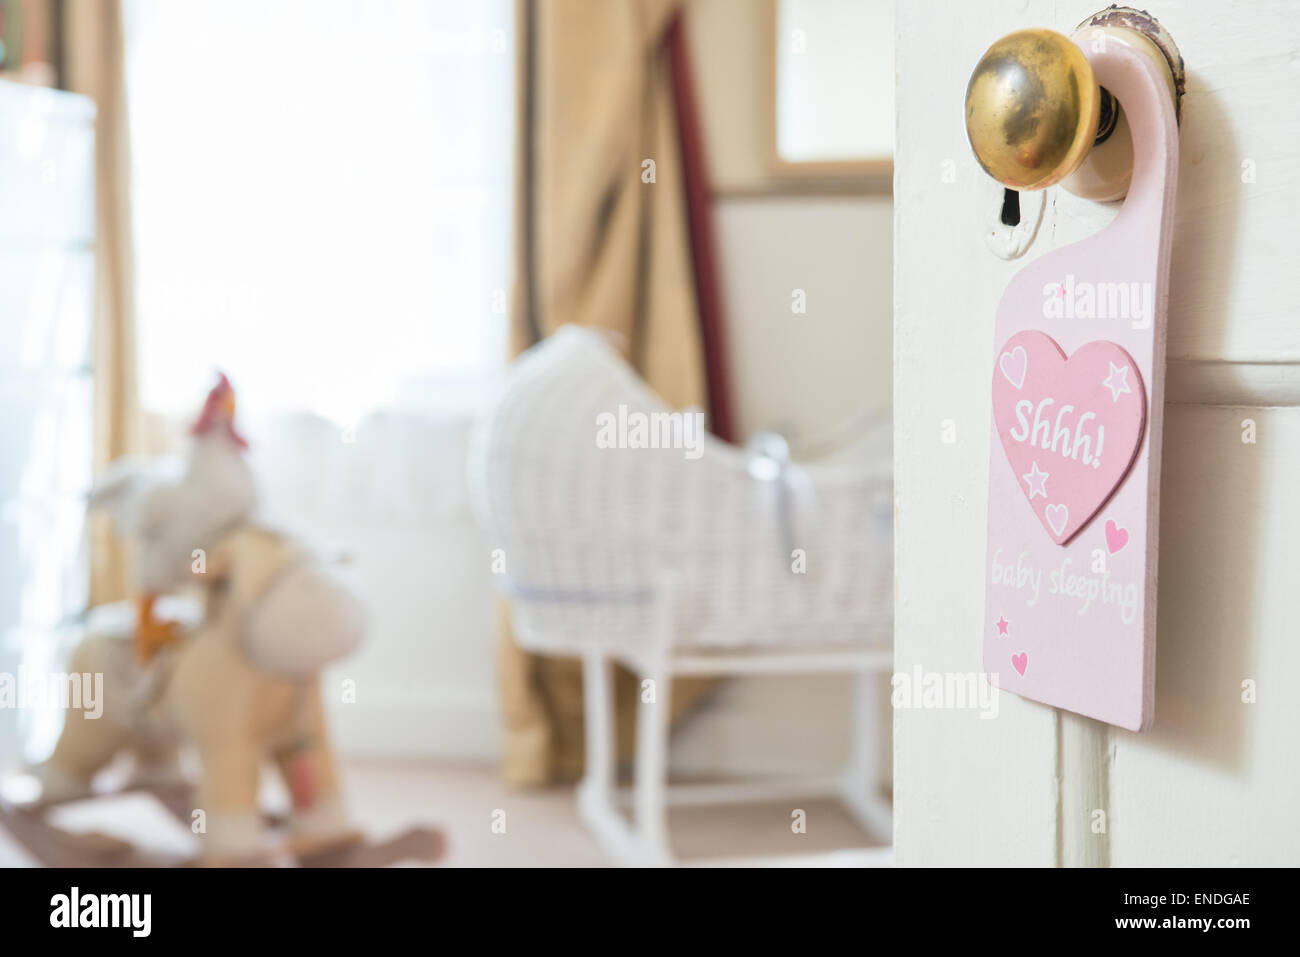 Eine offene Tür in ein Babys Kinderzimmer Schlafzimmer hängt ein Zeichen aus einem Messing-Türgriff mit dem Motiv "Shhh" geschrieben in einem rosa Herzen Stockfoto